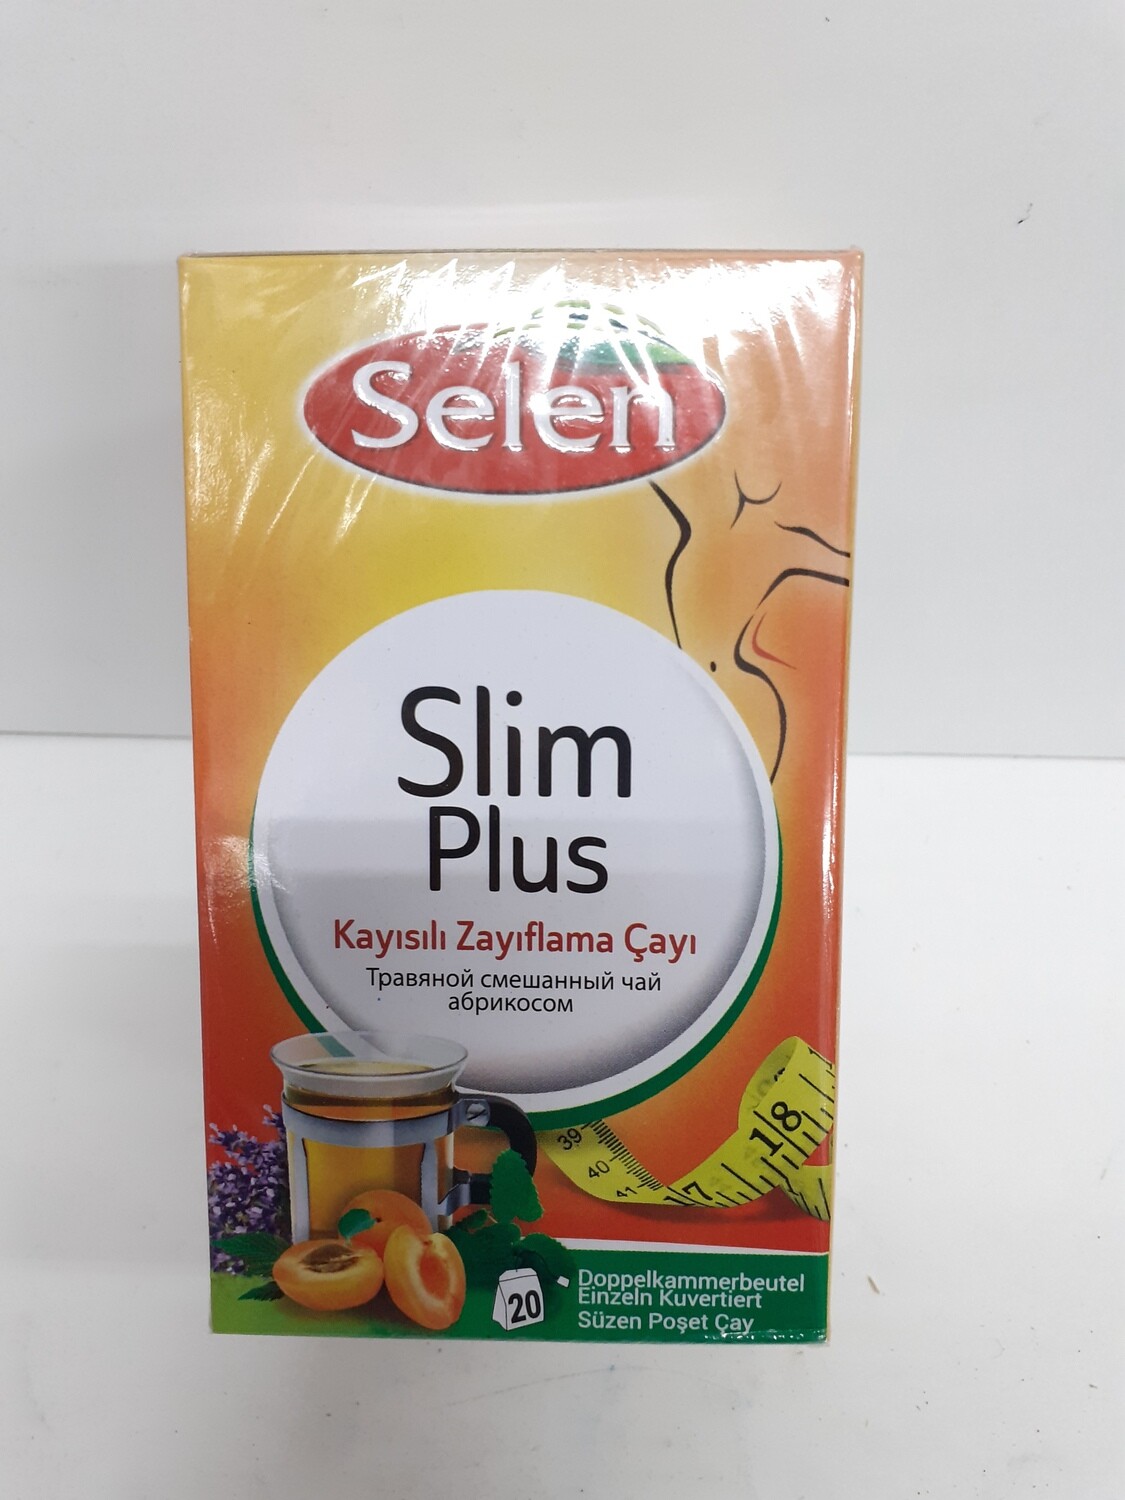 Slim Plus SELEN 40 g